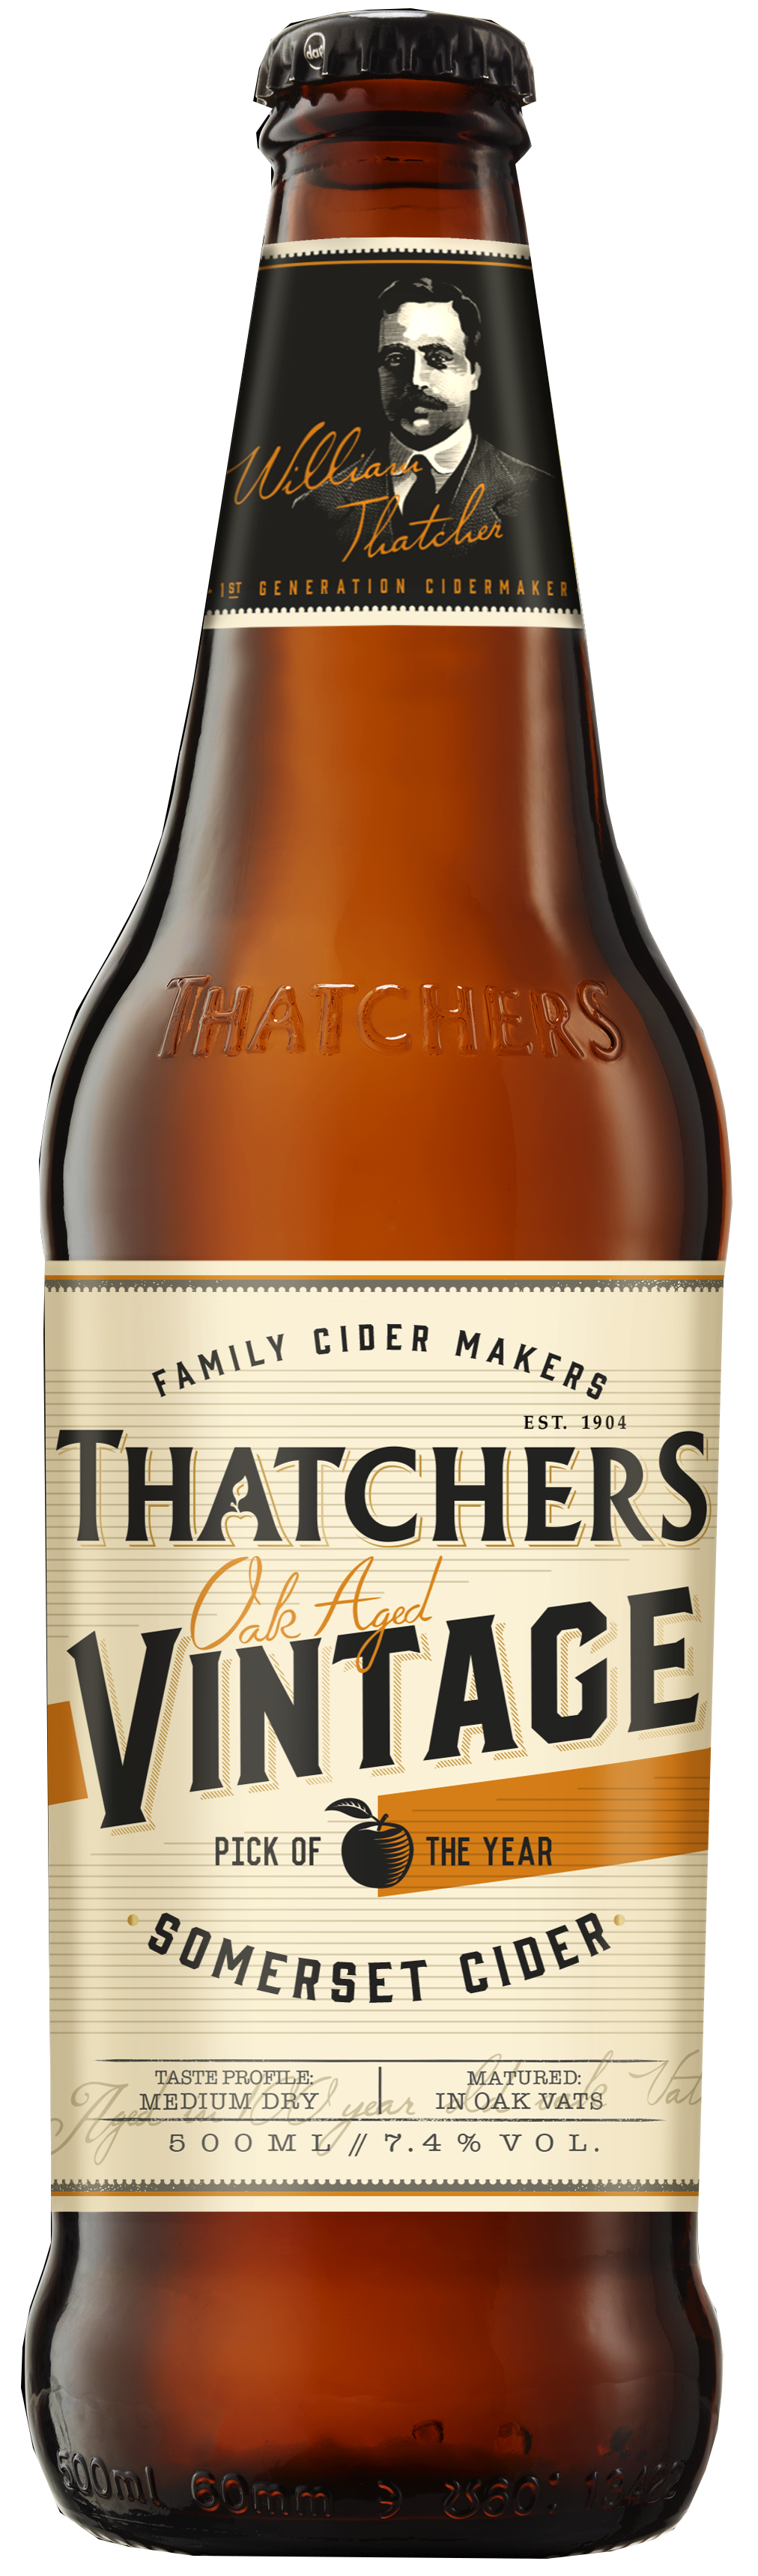 Produktbild von Thatchers Cider - Vintage Cider